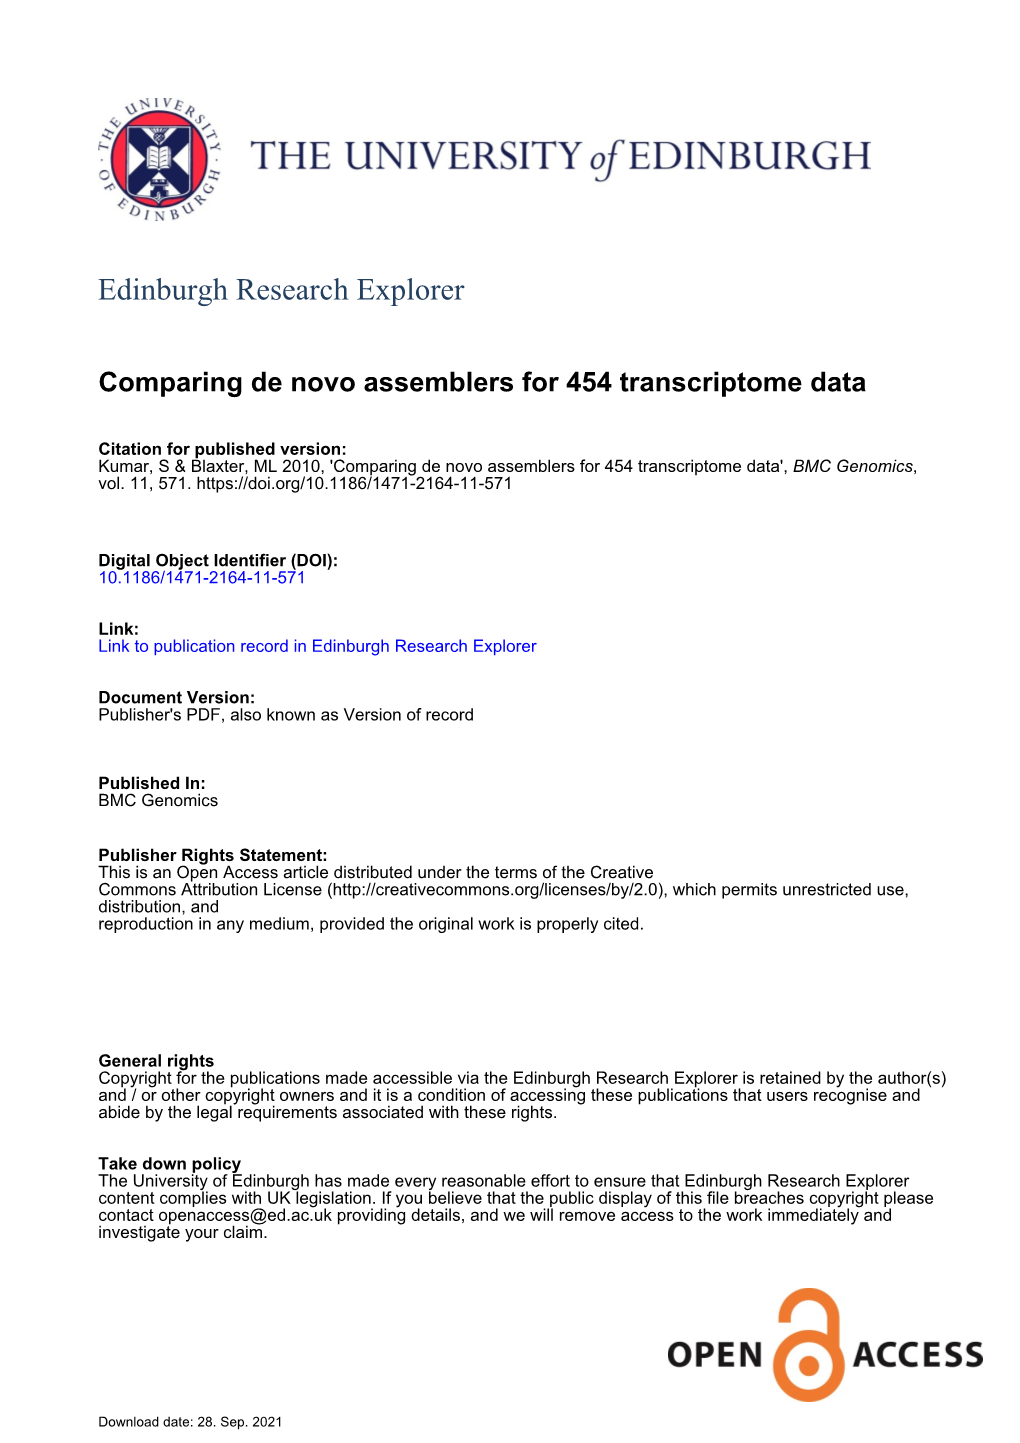 Comparing De Novo Assemblers for 454 Transcriptome Data